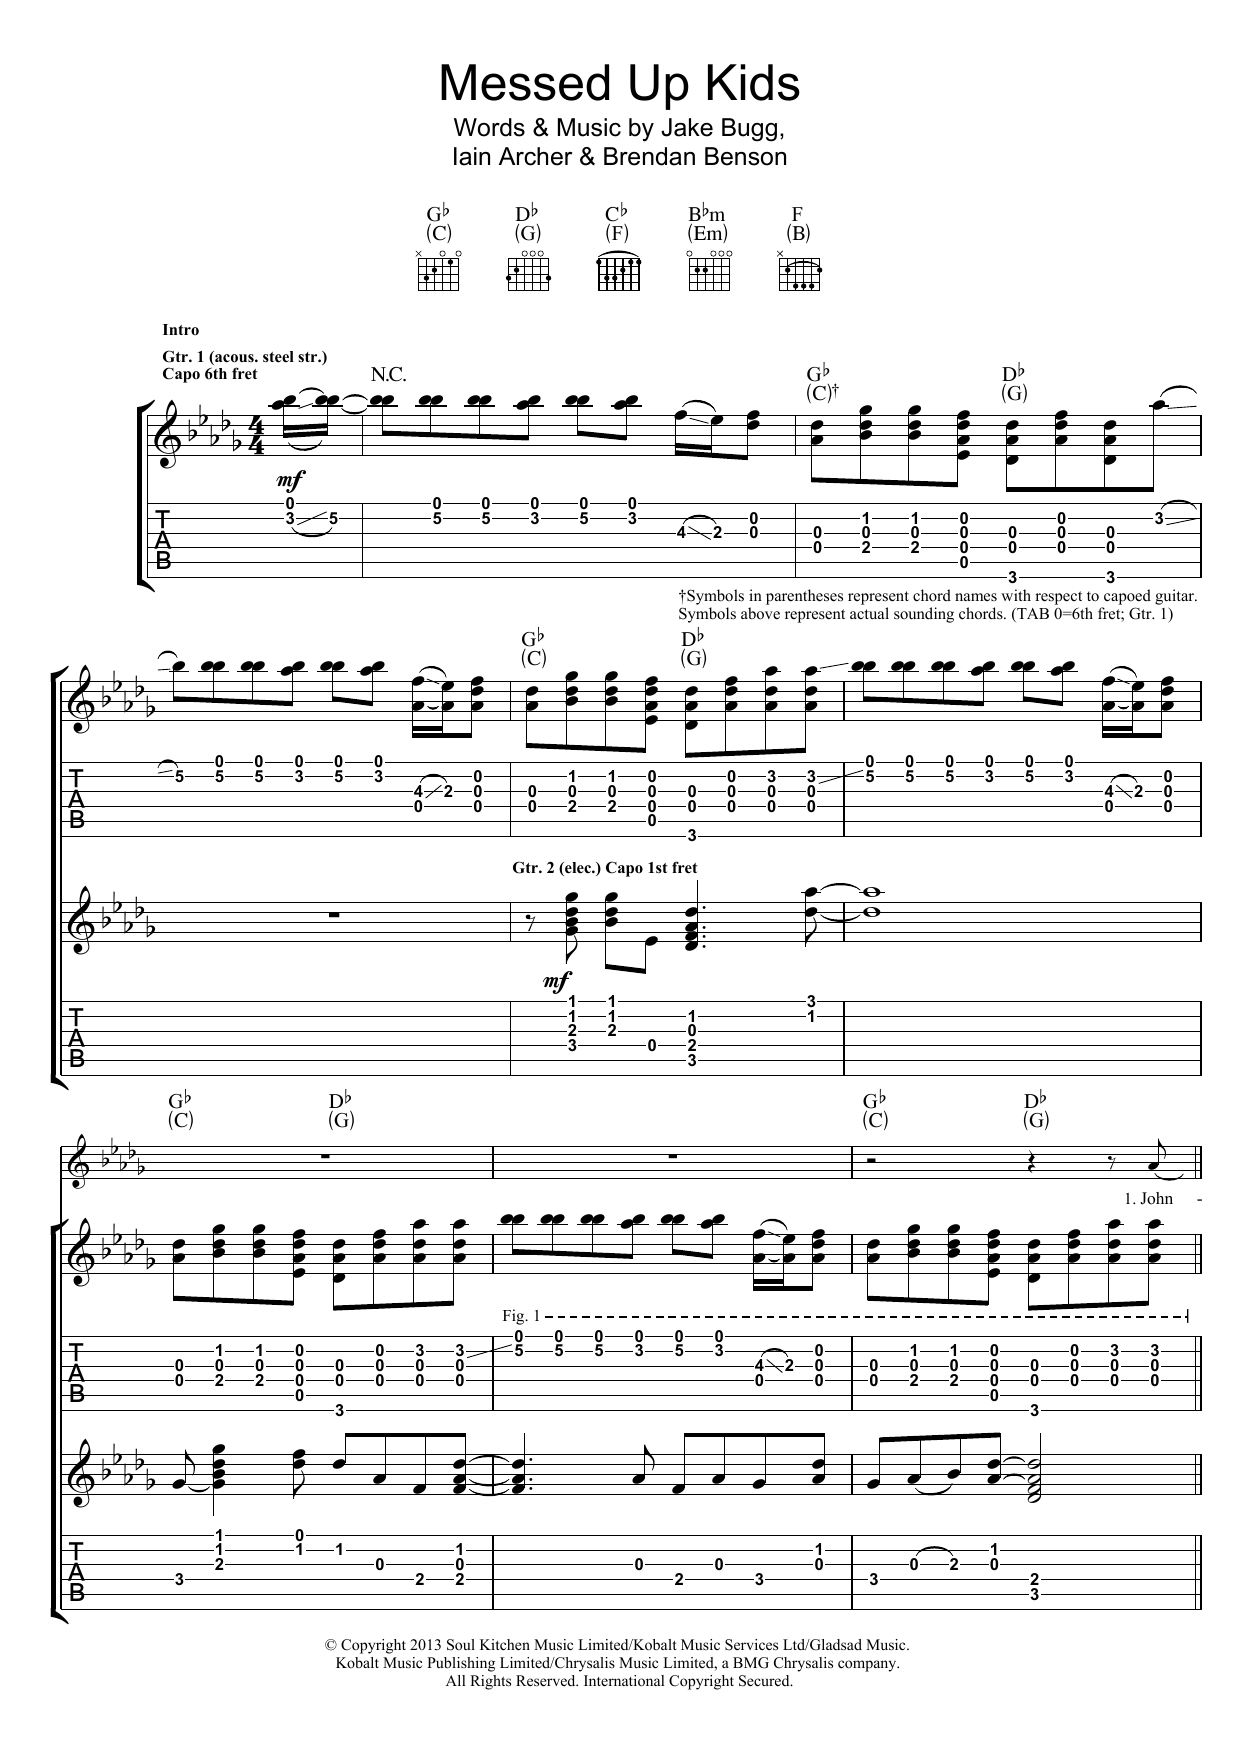 Jake Bugg Messed Up Kids Sheet Music Notes & Chords for Guitar Chords/Lyrics - Download or Print PDF